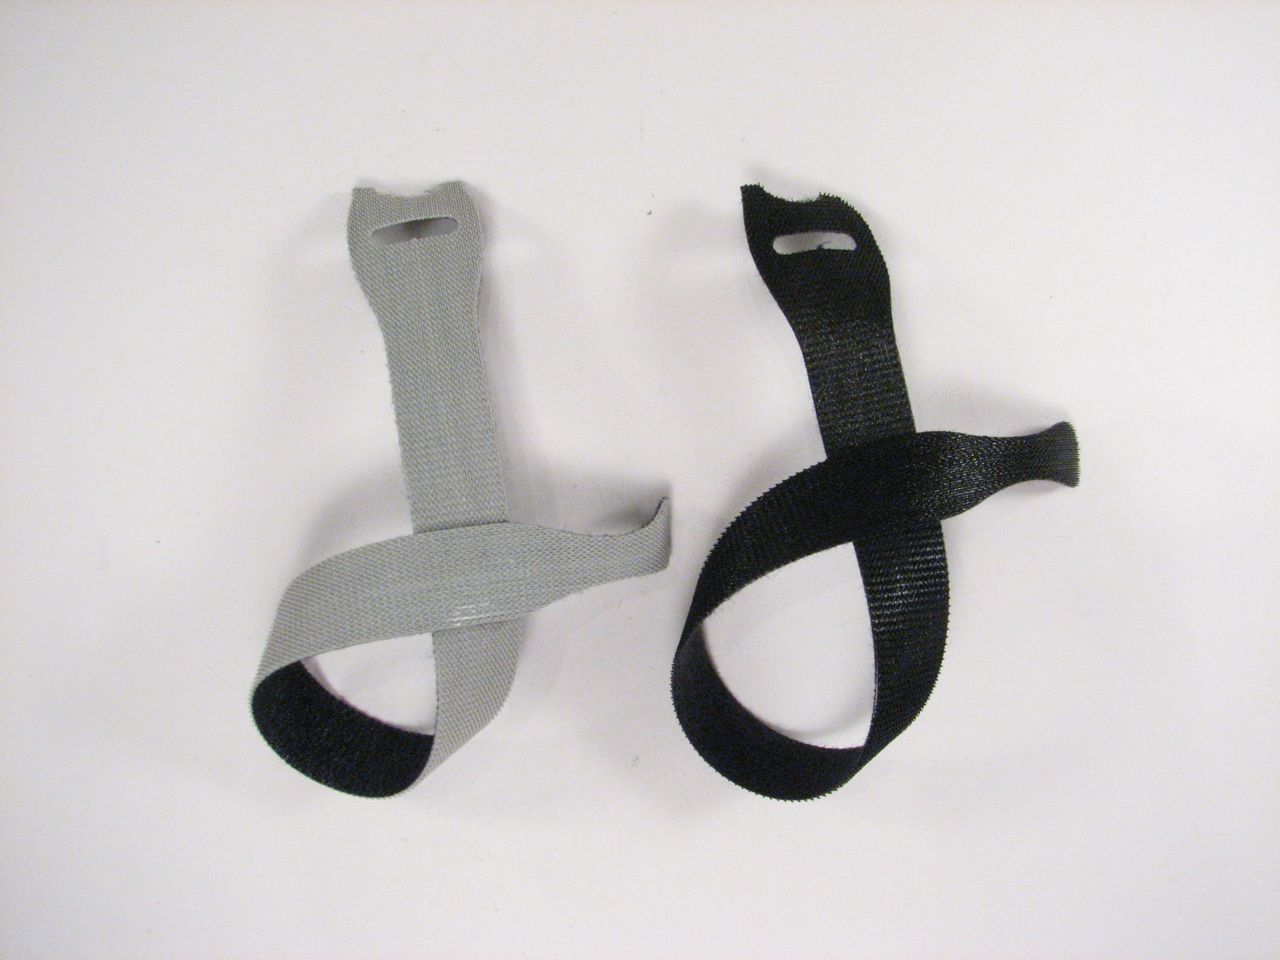 velcro hook and loop ties